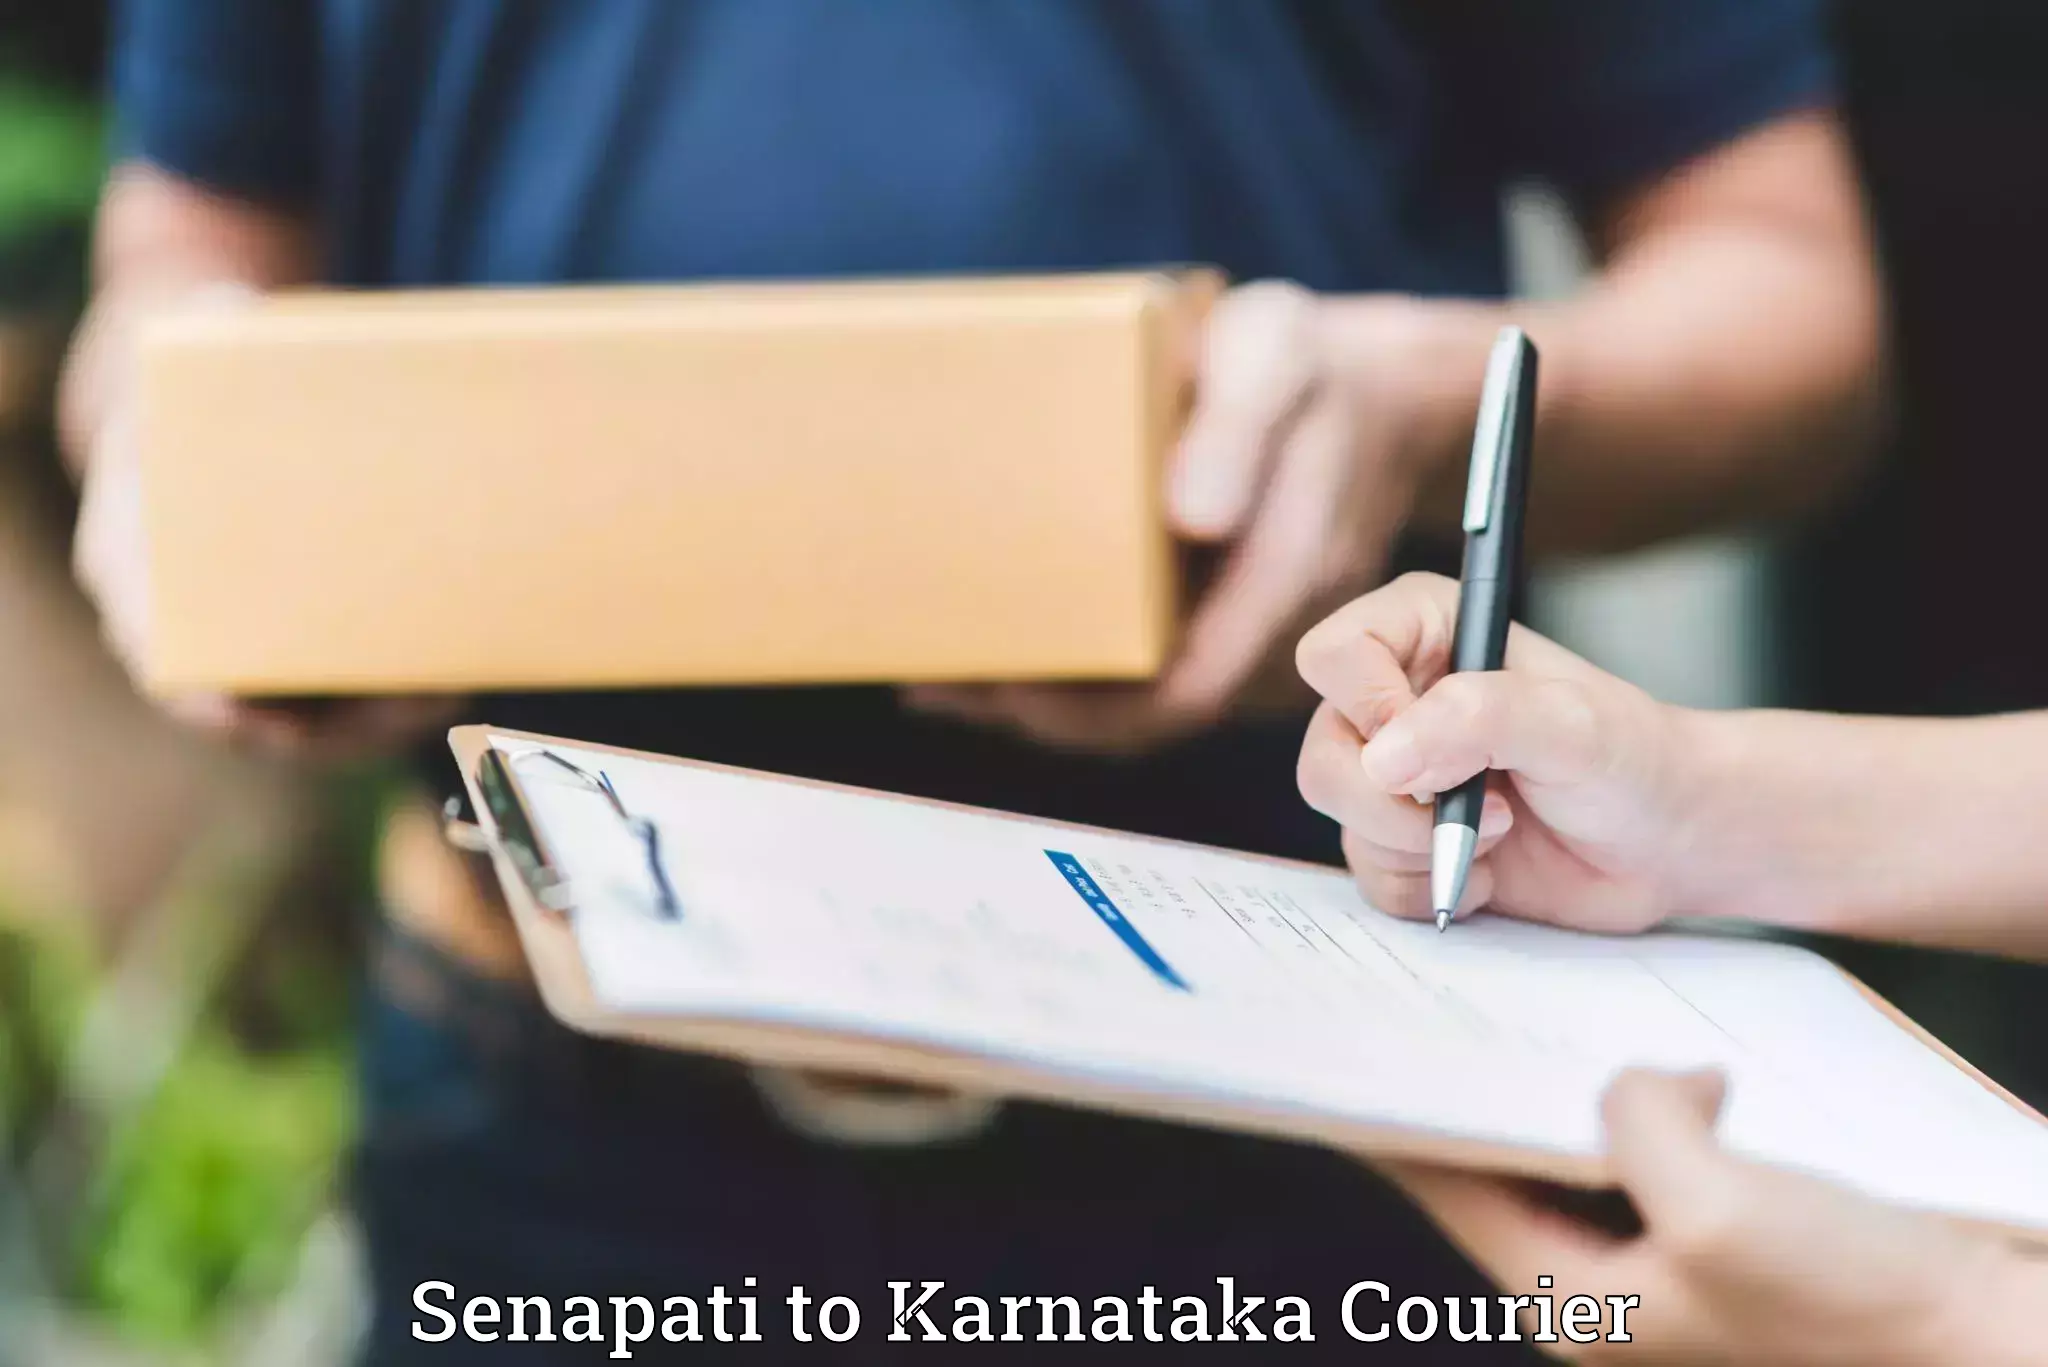 Baggage shipping service Senapati to Karnataka